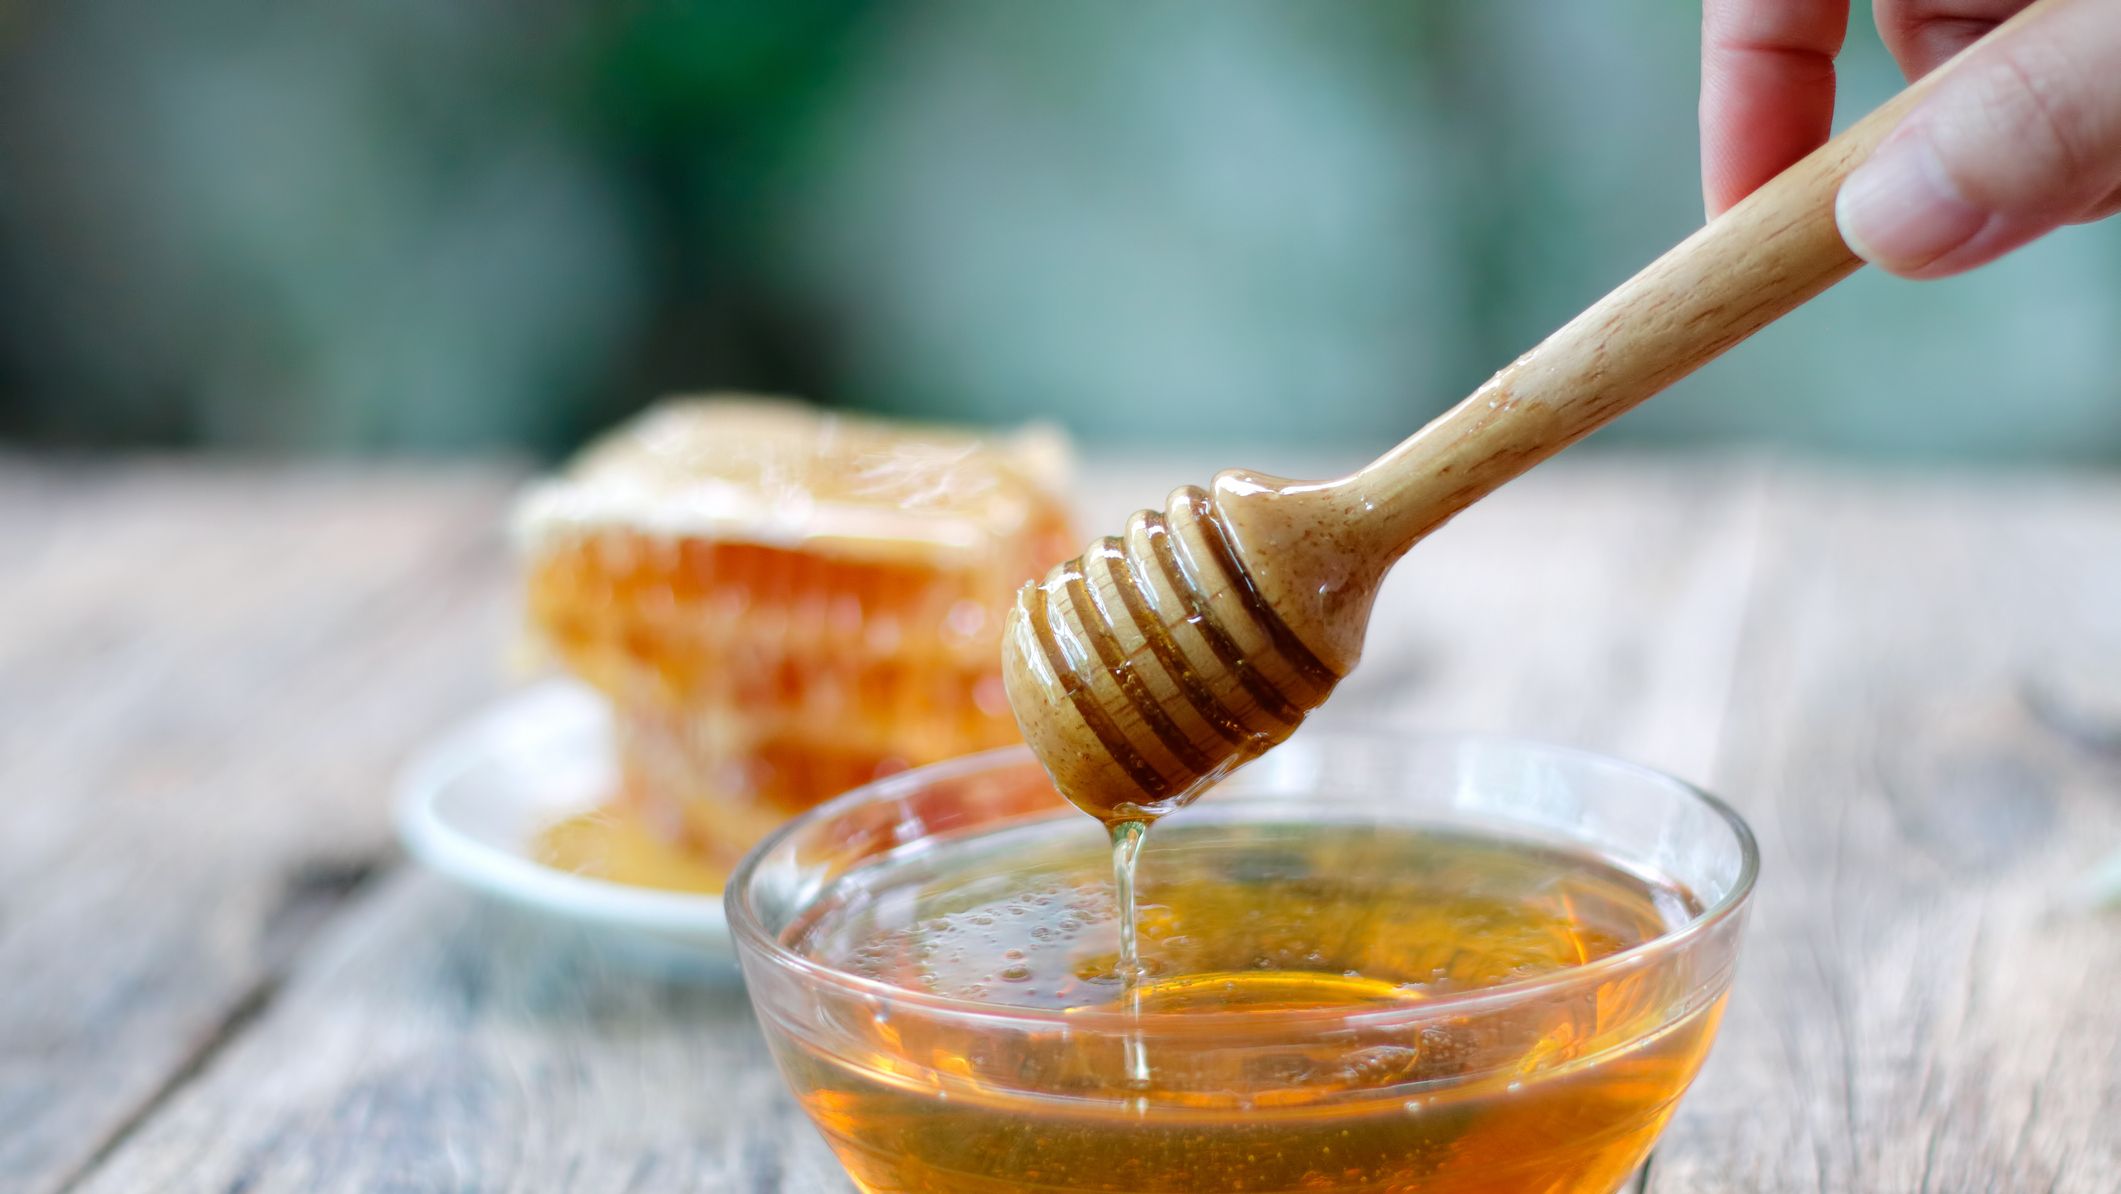 كيف تعرف العسل الحر؟ الحقائق الدامغة للتمييز بين العسل الحر والمغشوش